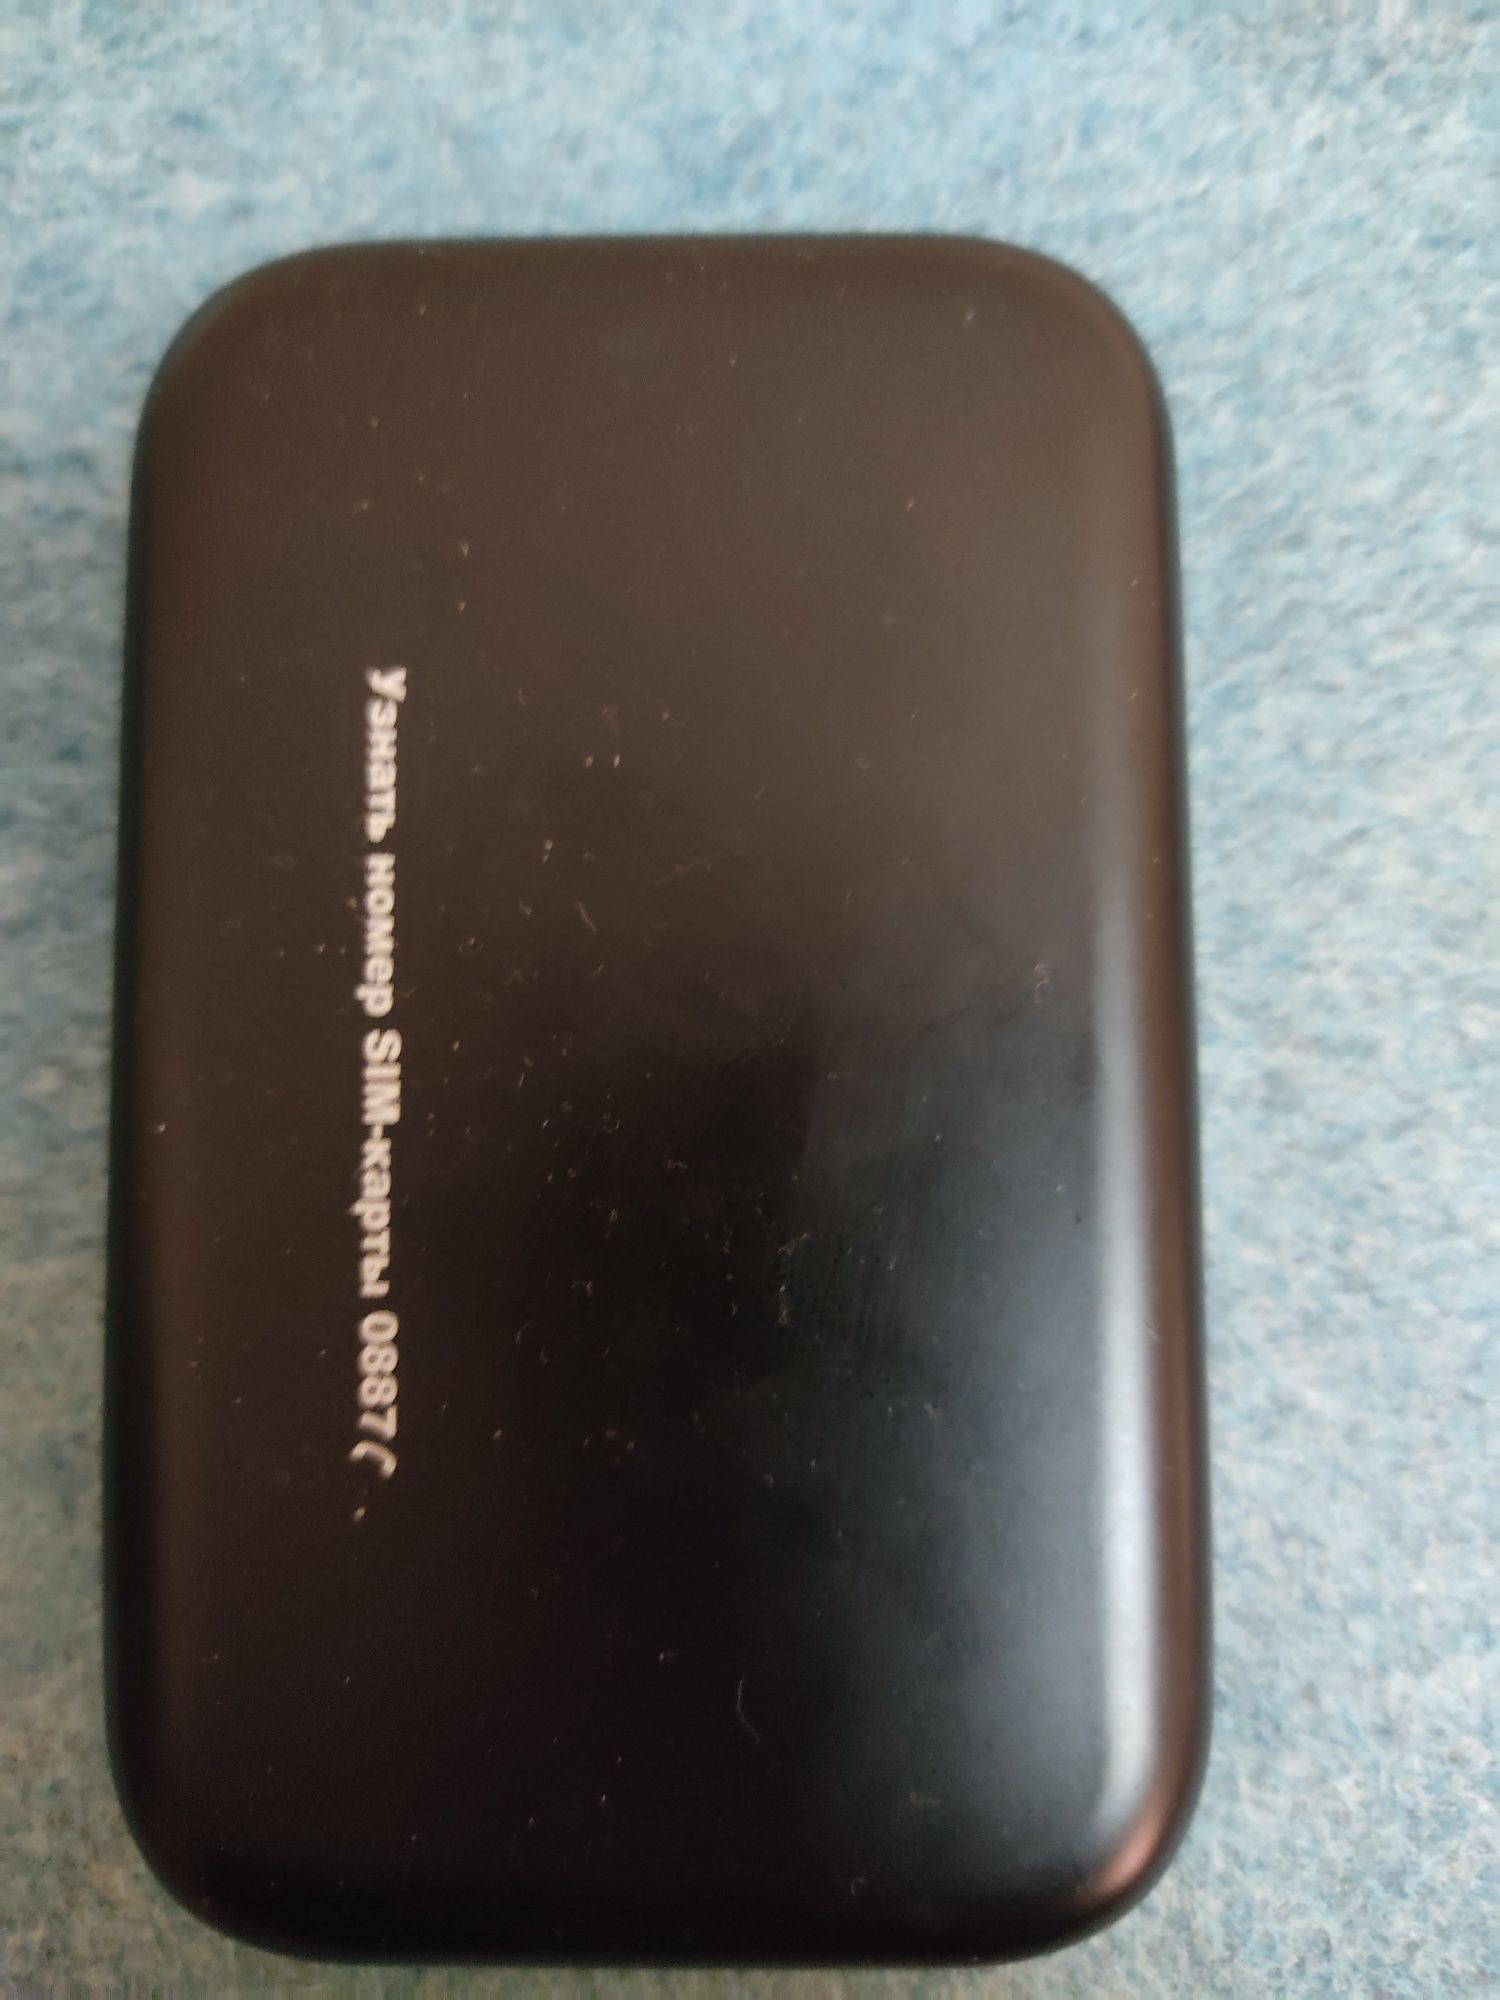 Huawei 4G WiFi LTE wi-fi router